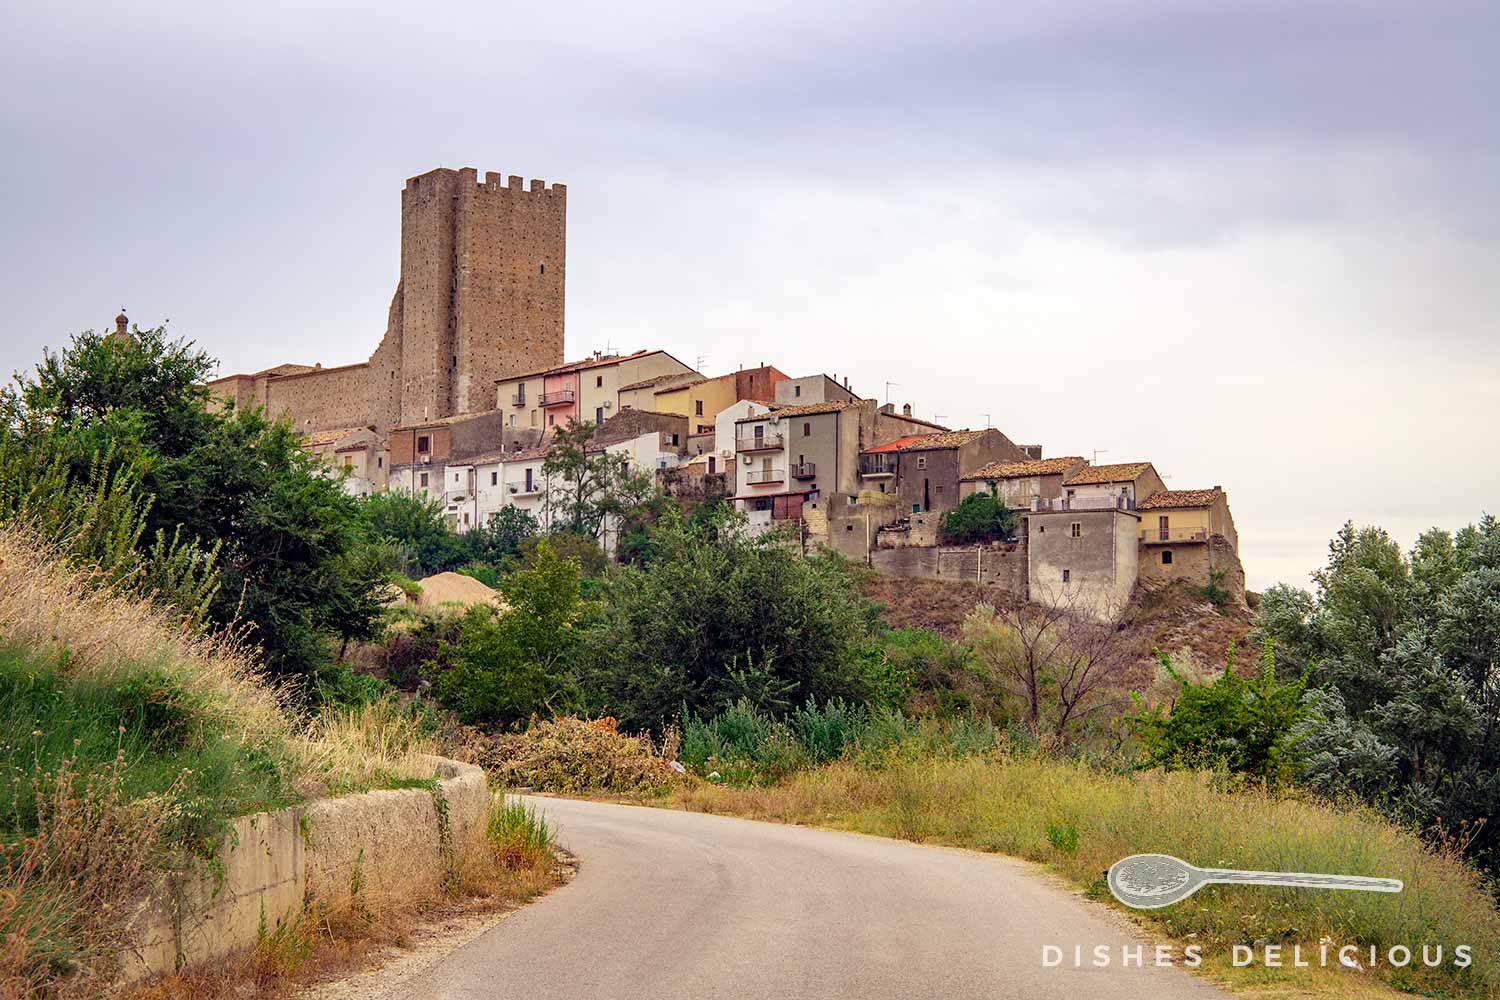 Foto des trutzigen Turms und der Altstadt von Pietramontecorvino.